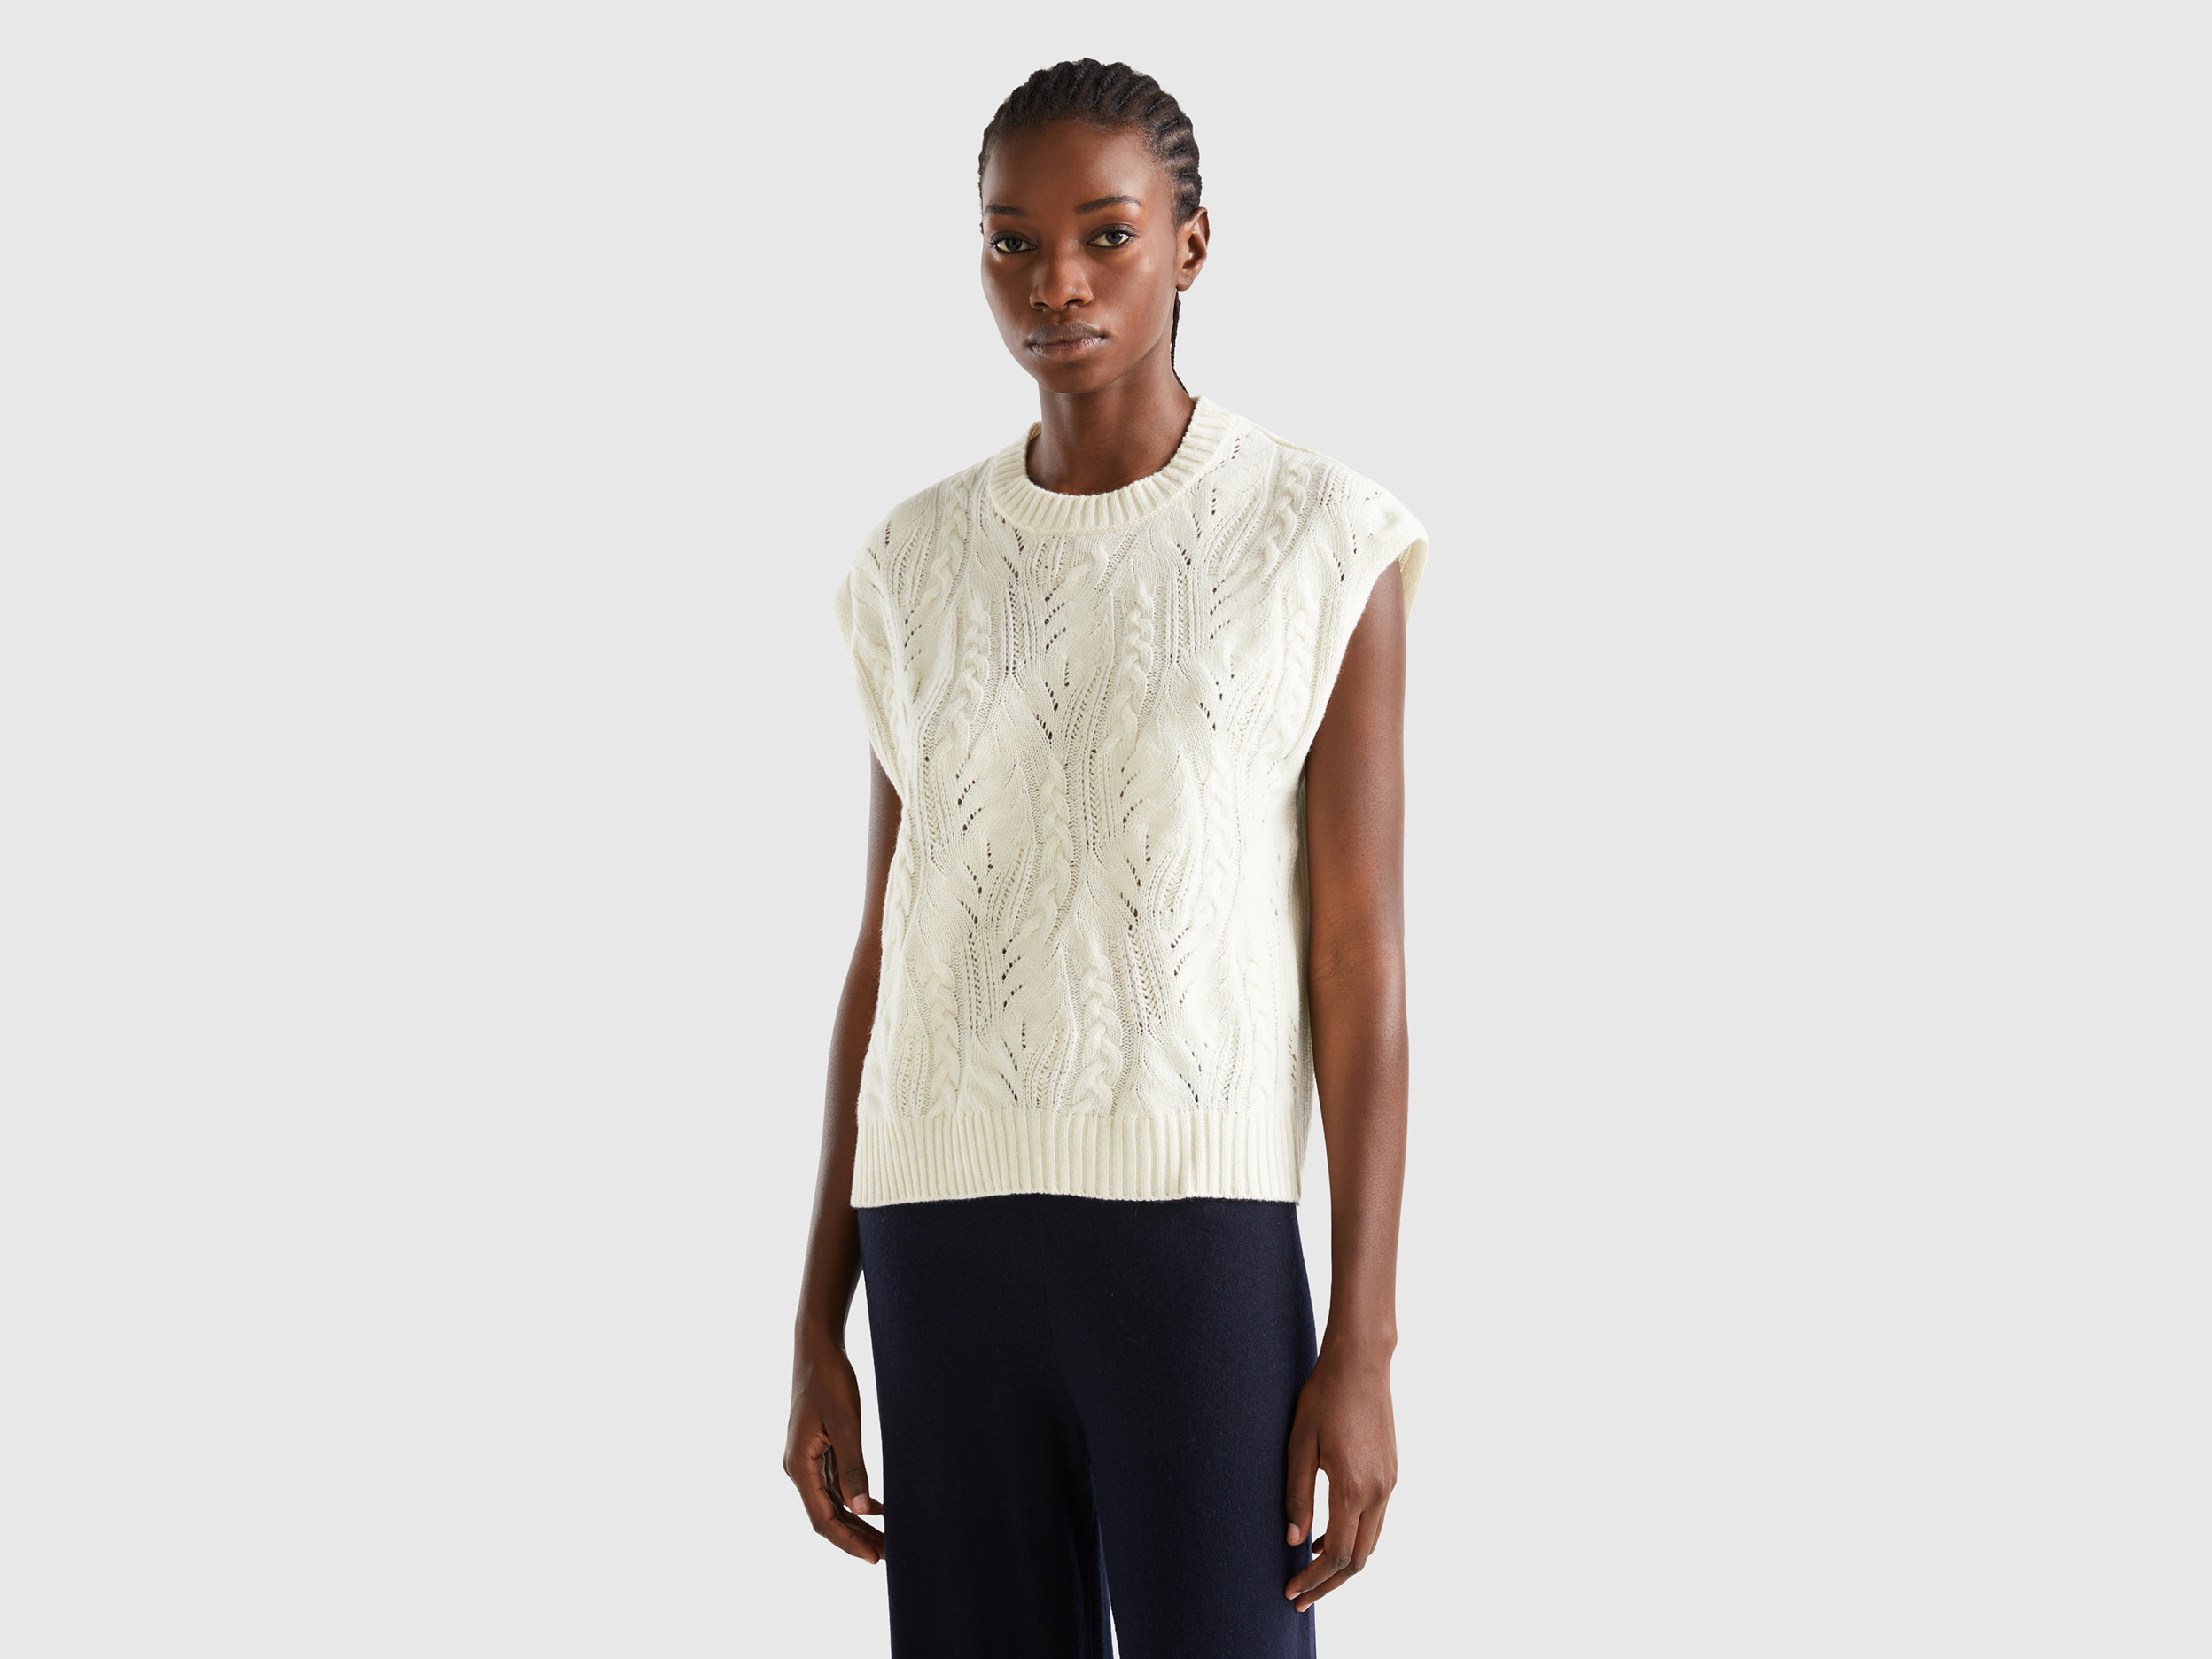 Benetton, Knit Vest In Wool Blend, size L-XL, Creamy White, Women